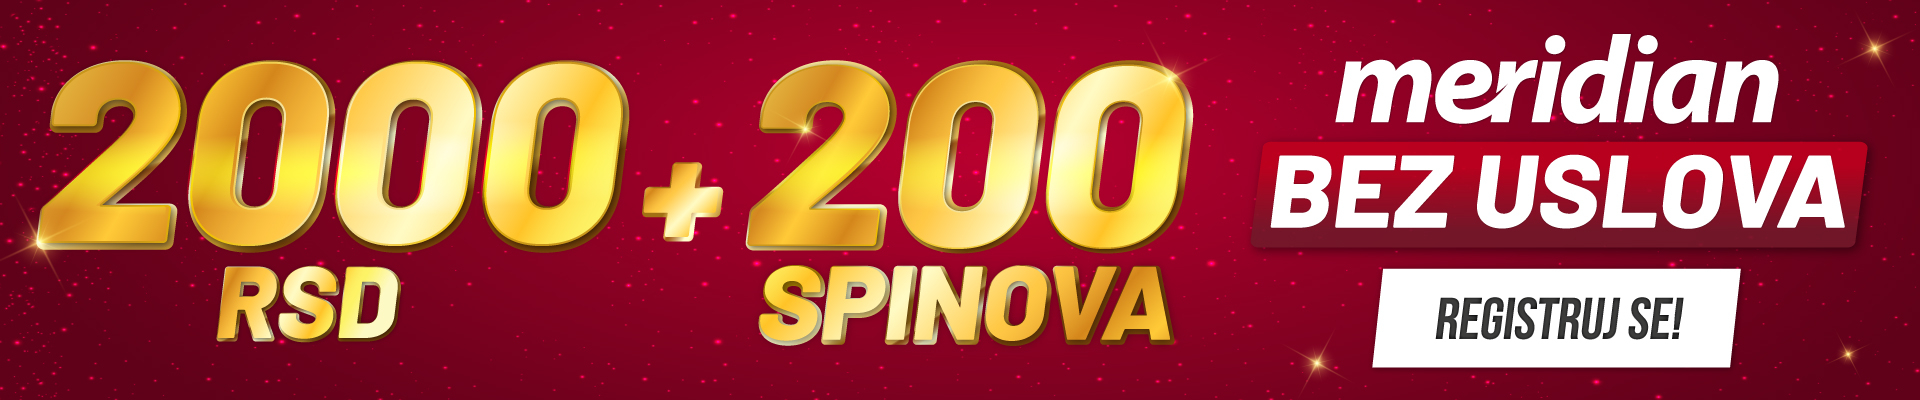 2000rsd + 200 spinova